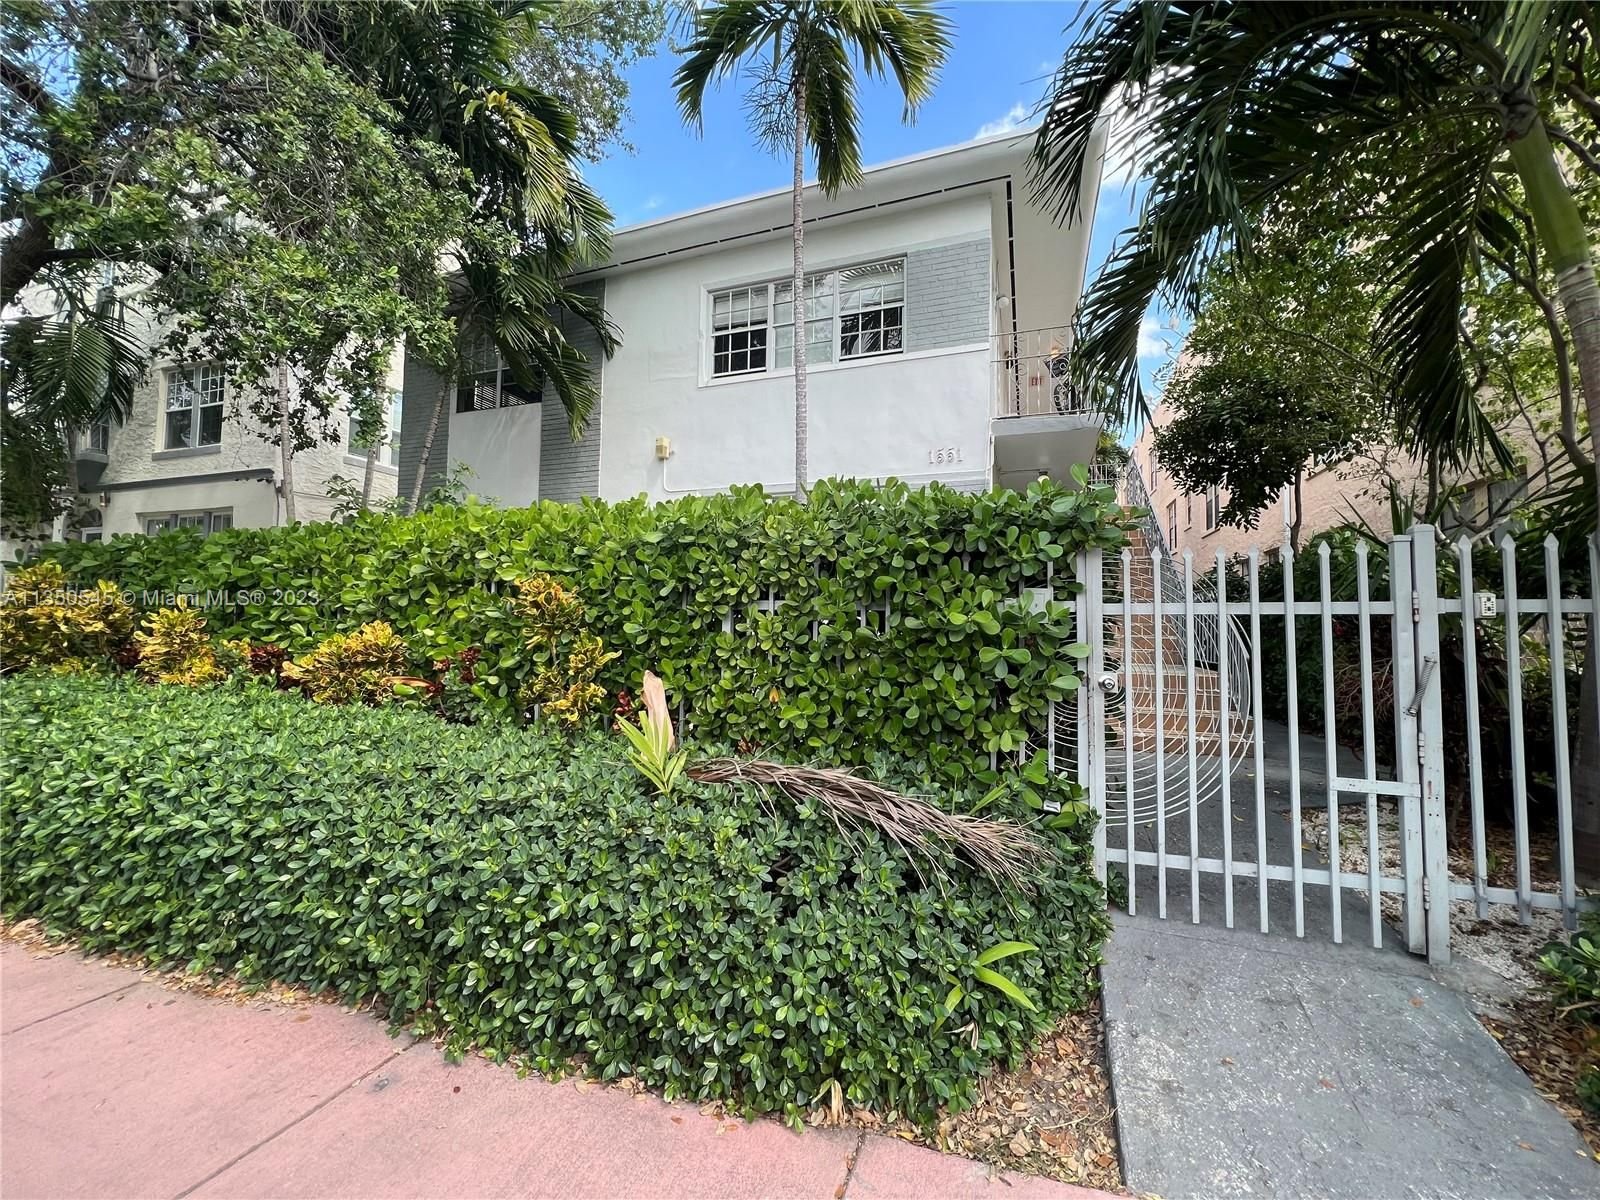 Real estate property located at 1551 Michigan Ave #12, Miami-Dade County, Miami Beach, FL